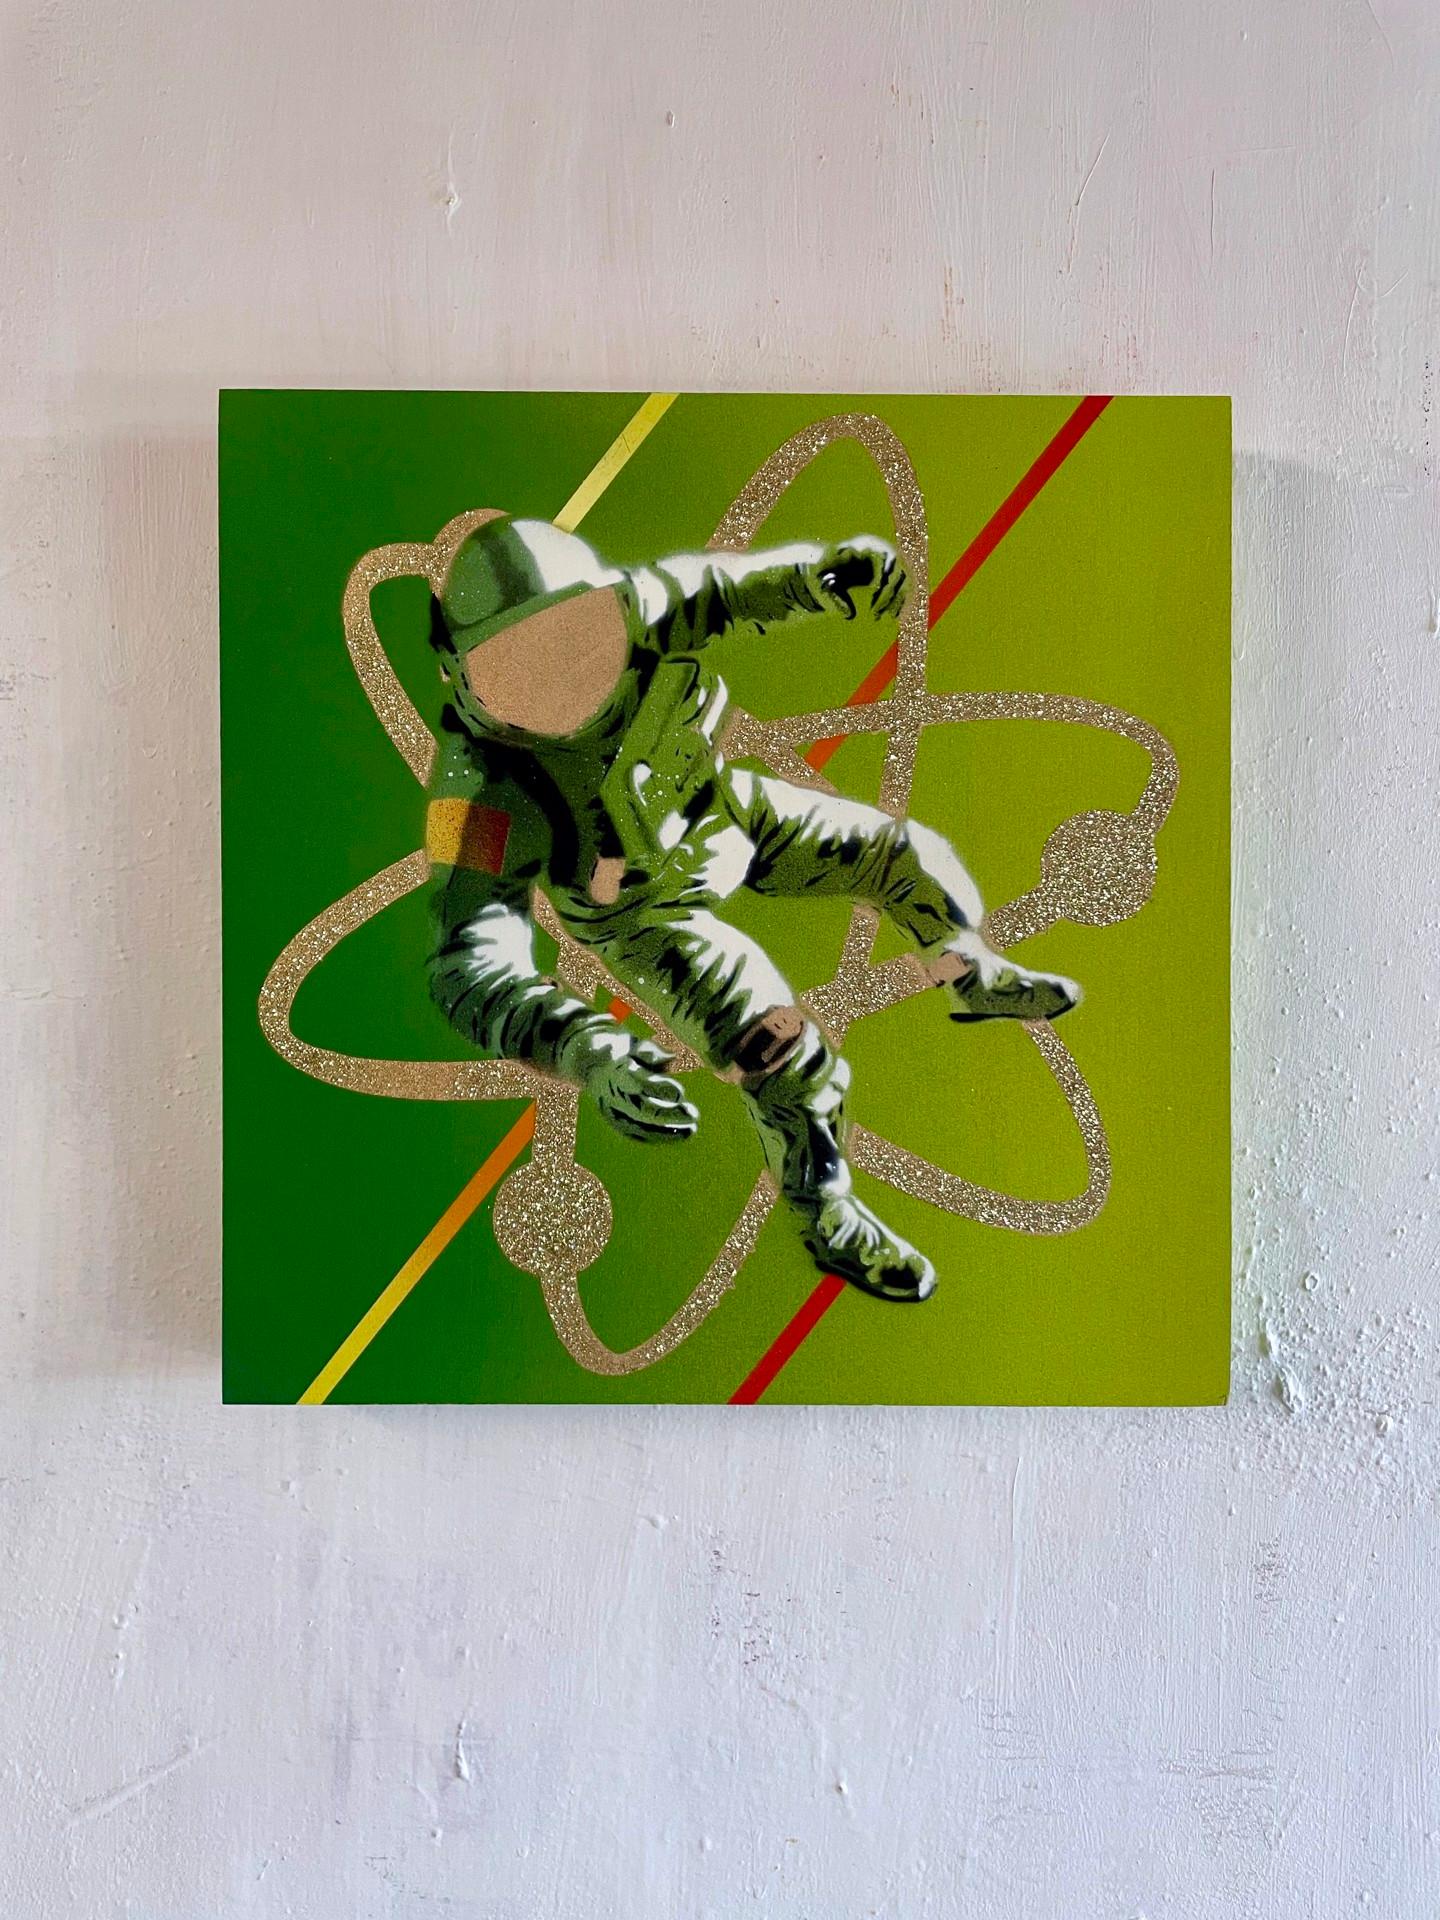 Le retour de Saturne - peinture d'espace futuriste contemporaine (vert et noir) - Painting de Hero